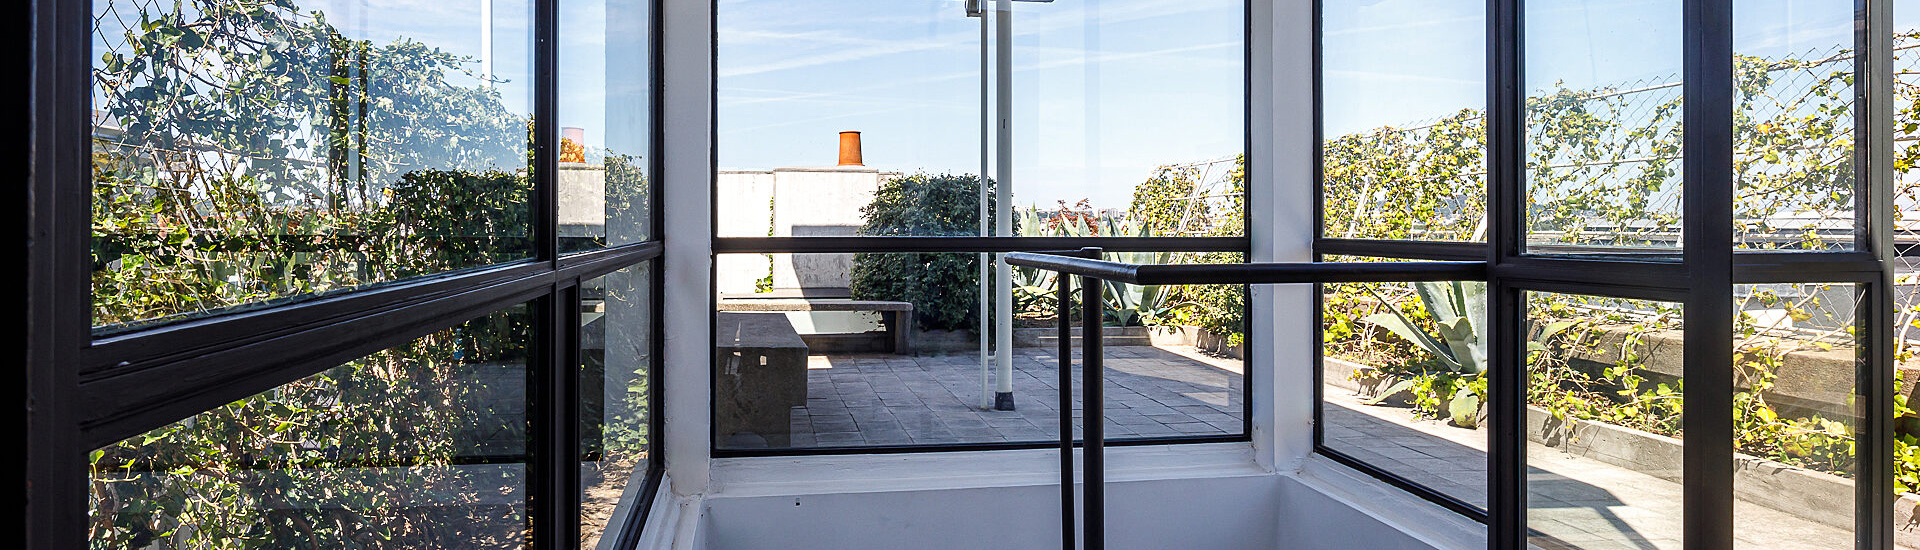 Le toit-terrasse de l'appartement-atelier de Le Corbusier © FLC / ADAGP / Frédéric Betsch